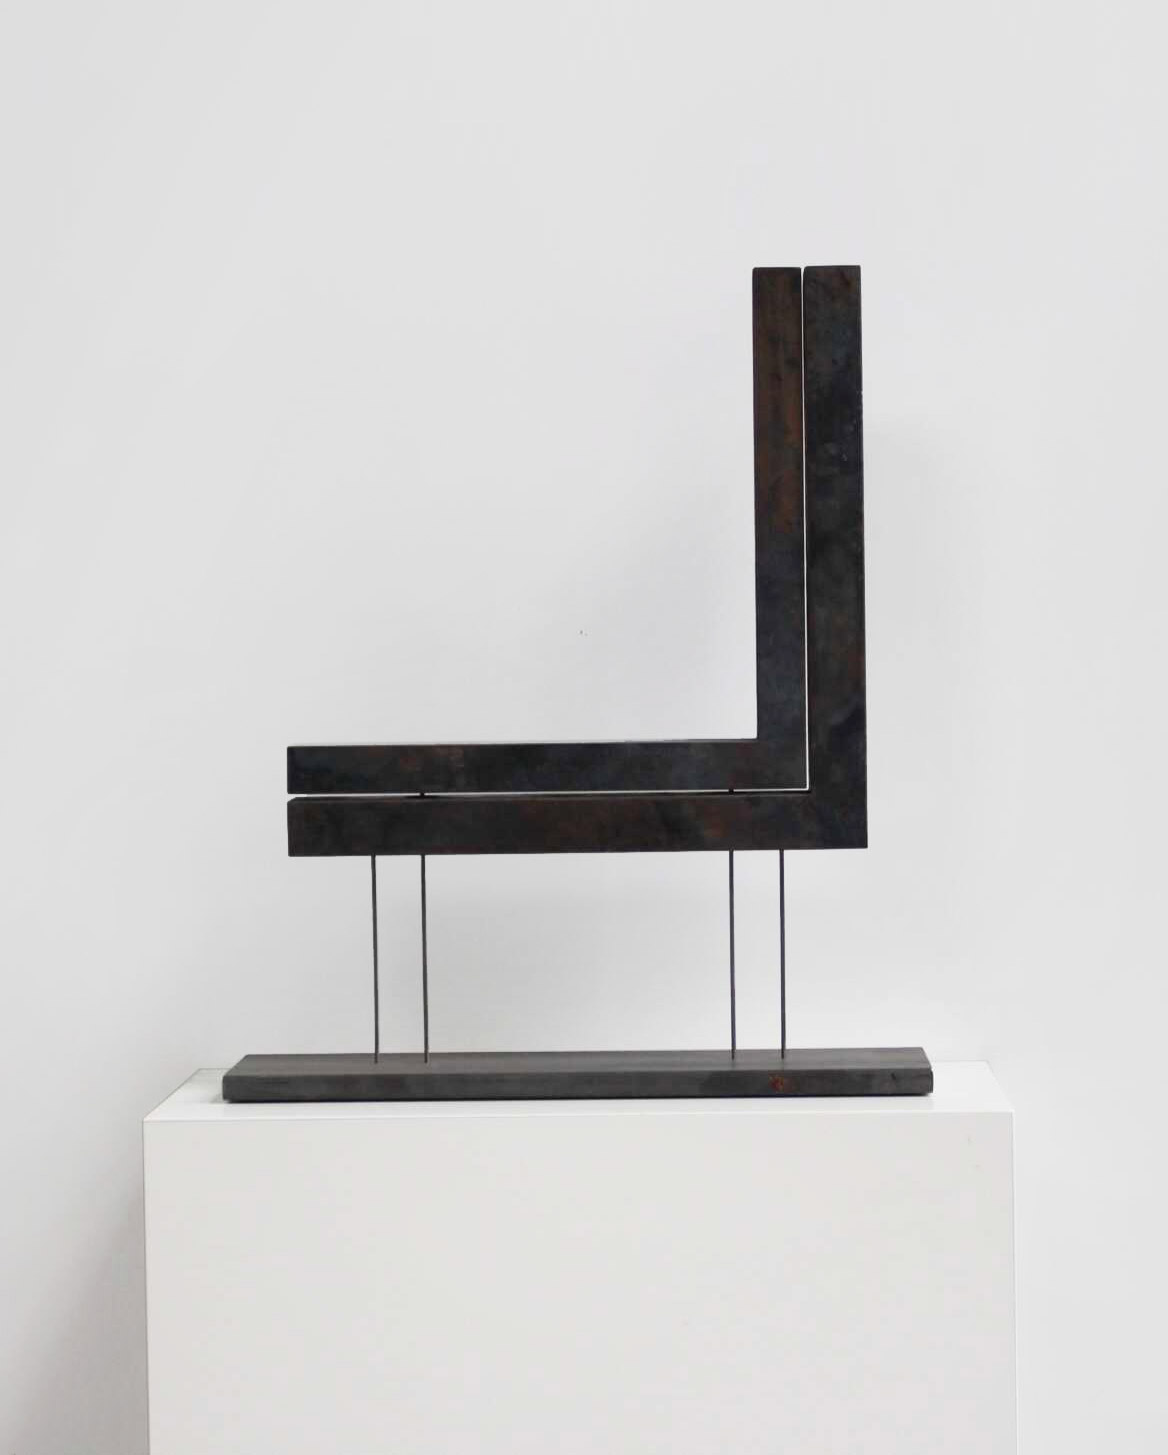 Minimalist Steel Sculpture by Jürgen Heinz